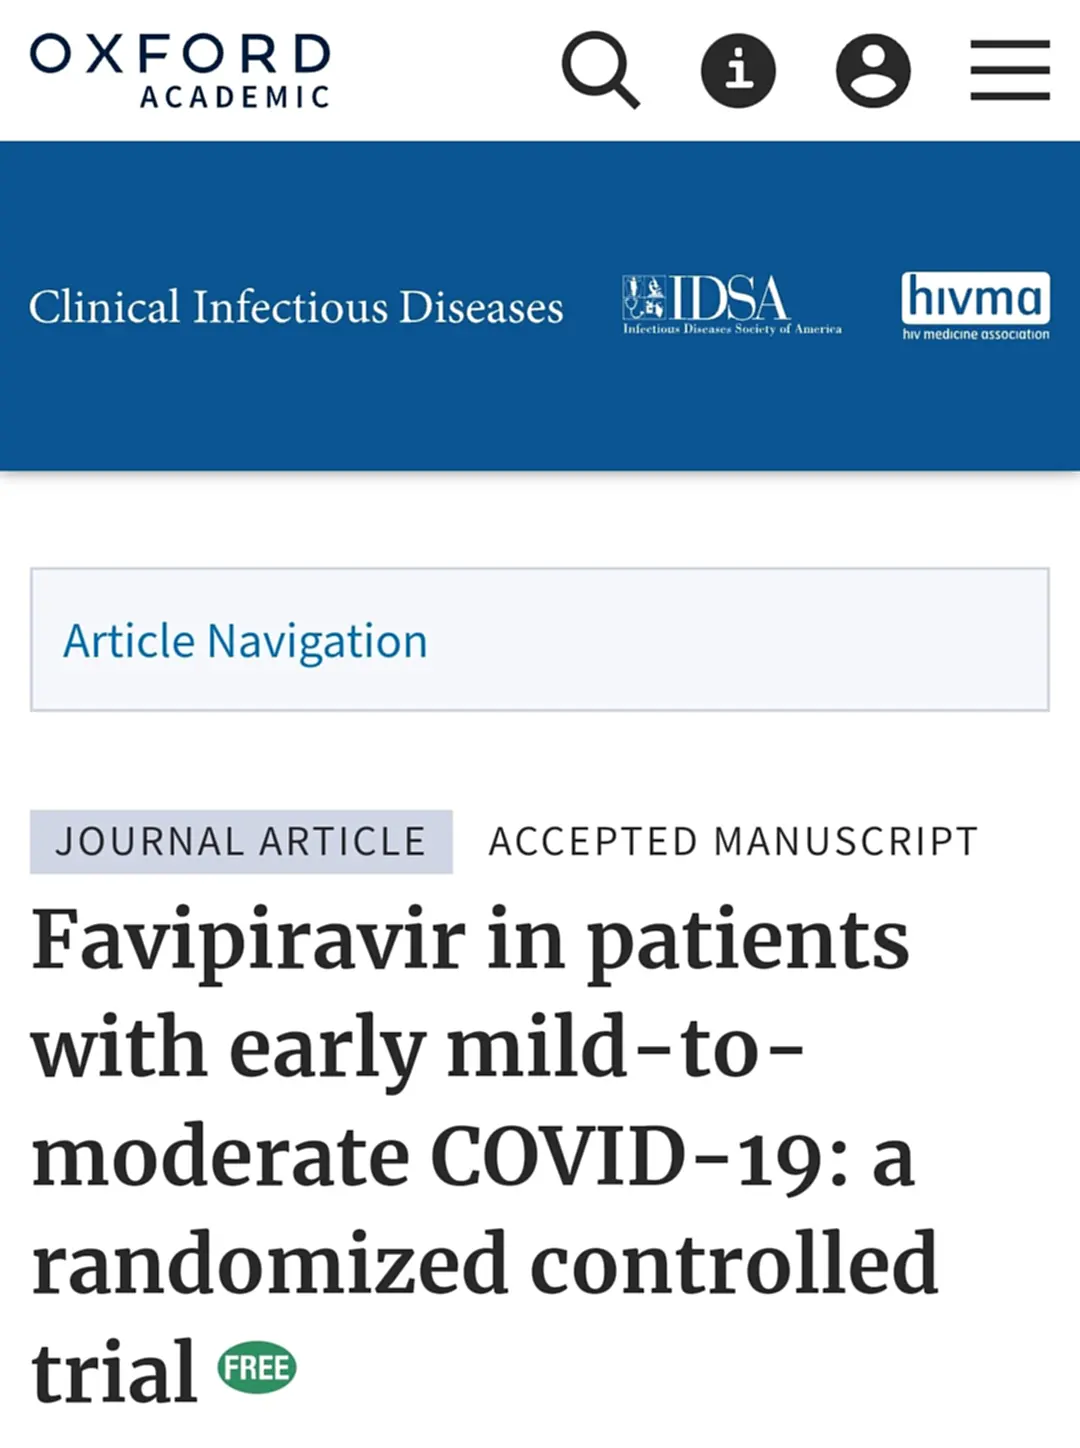 Favipiravir, อนันต์ จงแก้ววัฒนา, งานวิจัย, โควิด-19, COVID-19, ฟาวิพิราเวียร์